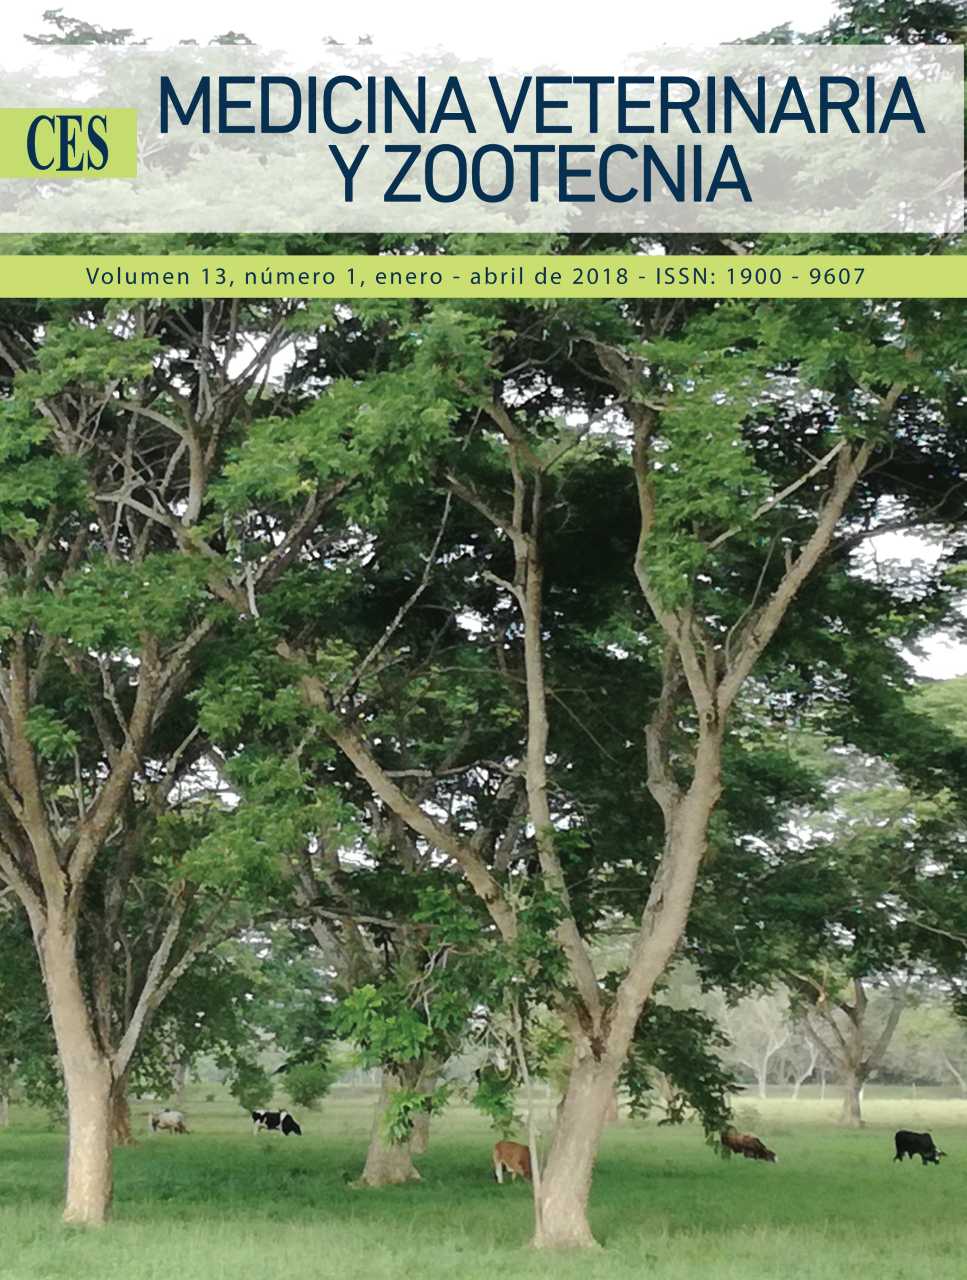 					Ver Vol. 13 Núm. 1 (2018): CES Medicina Veterinaria y Zootecnia
				